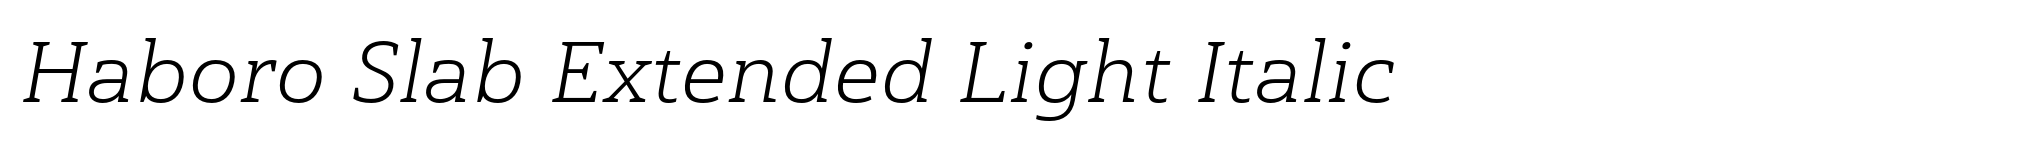 Haboro Slab Extended Light Italic image